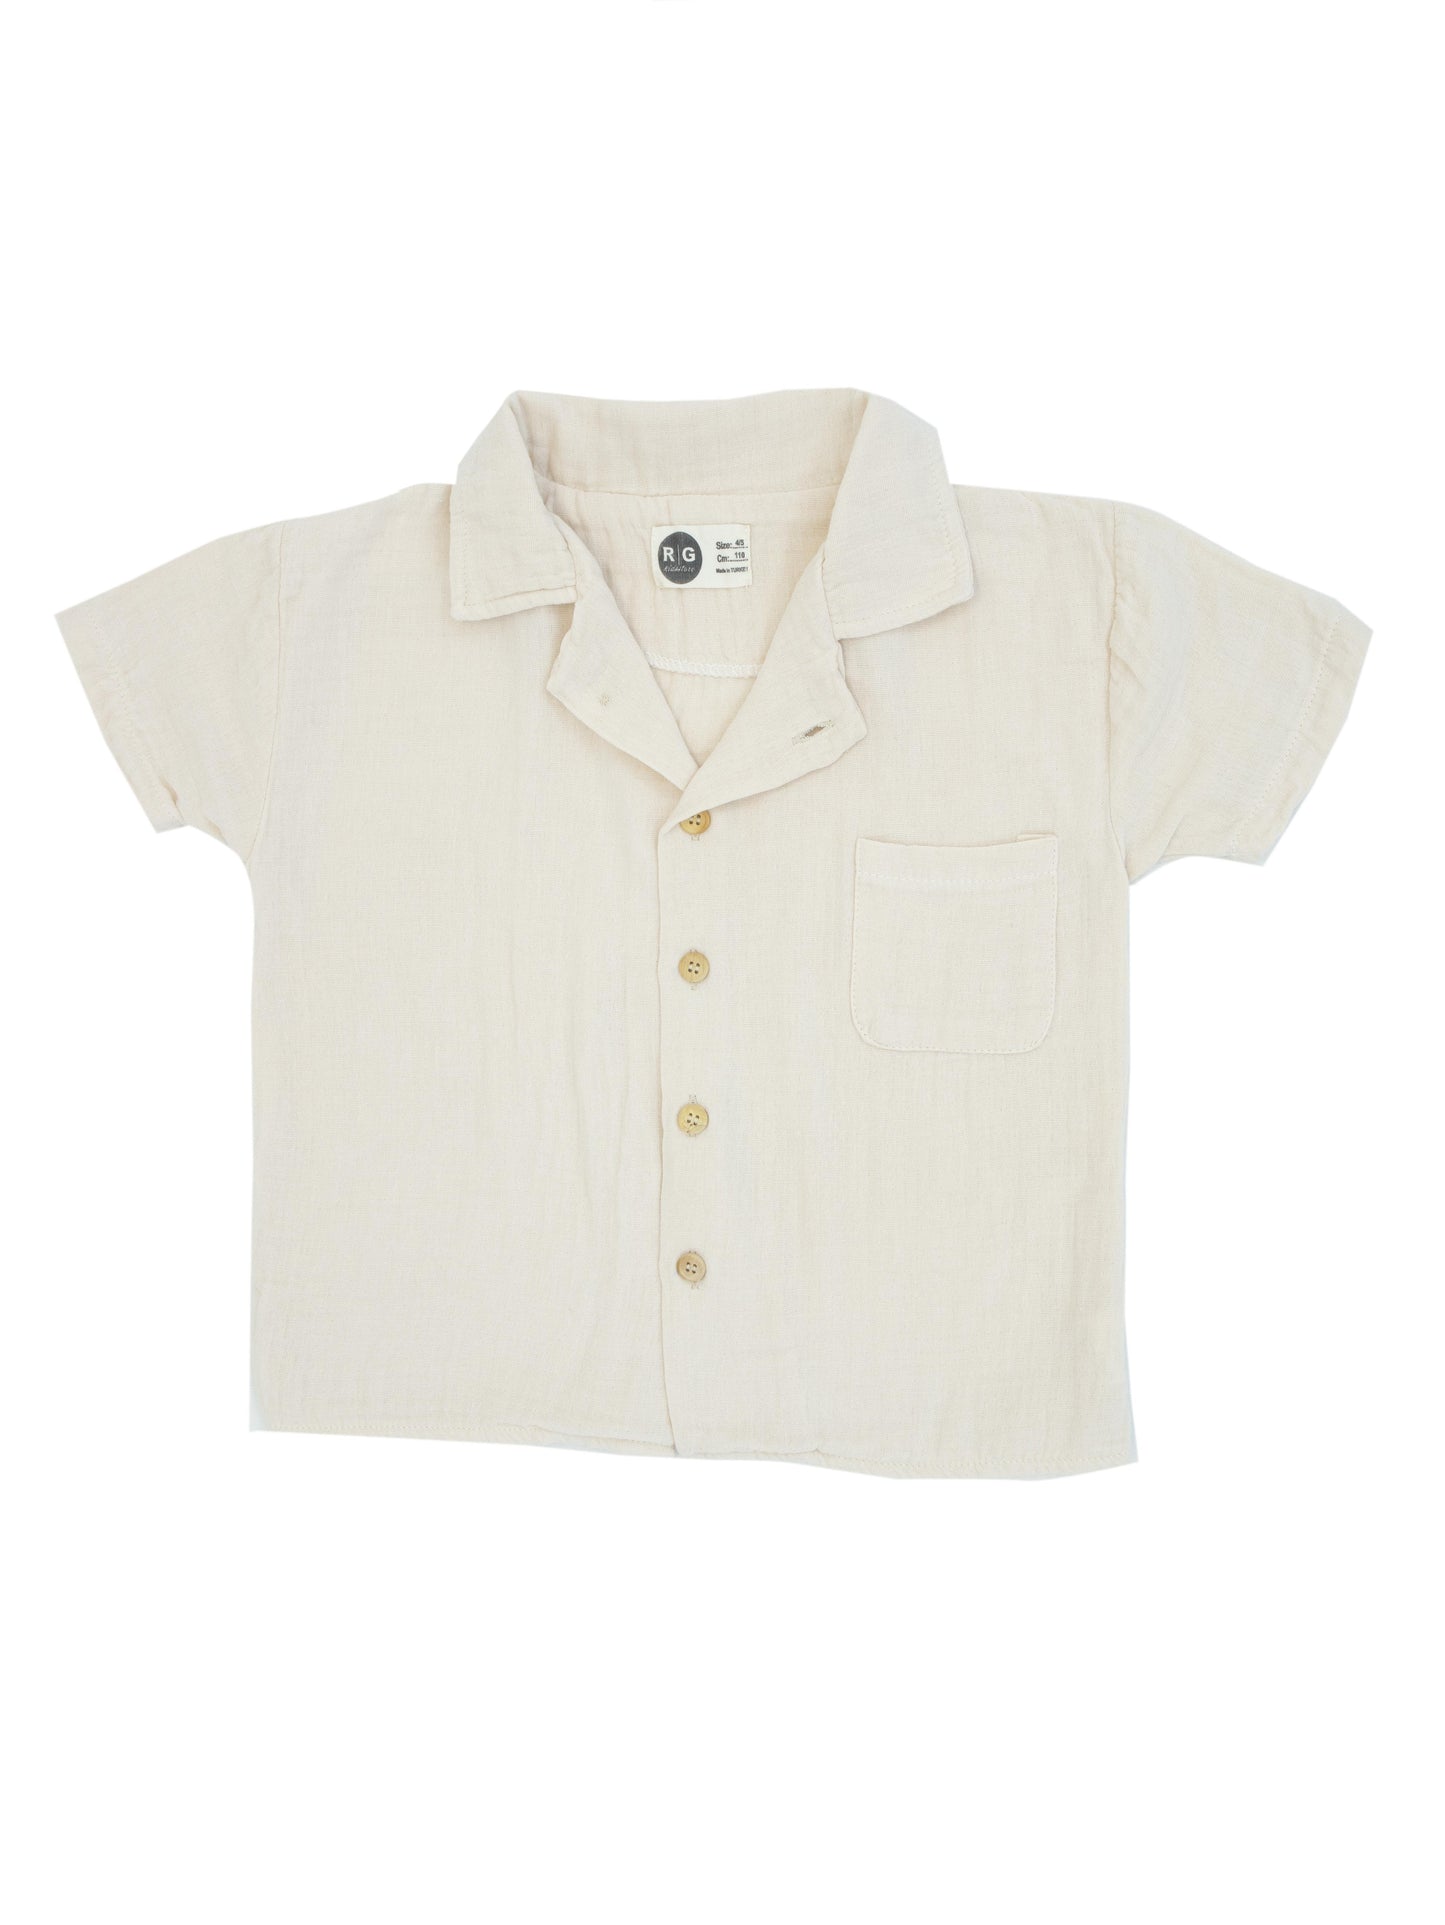 Подростковая рубашка из 100% органического муслина с короткими рукавами и пуговицами спереди